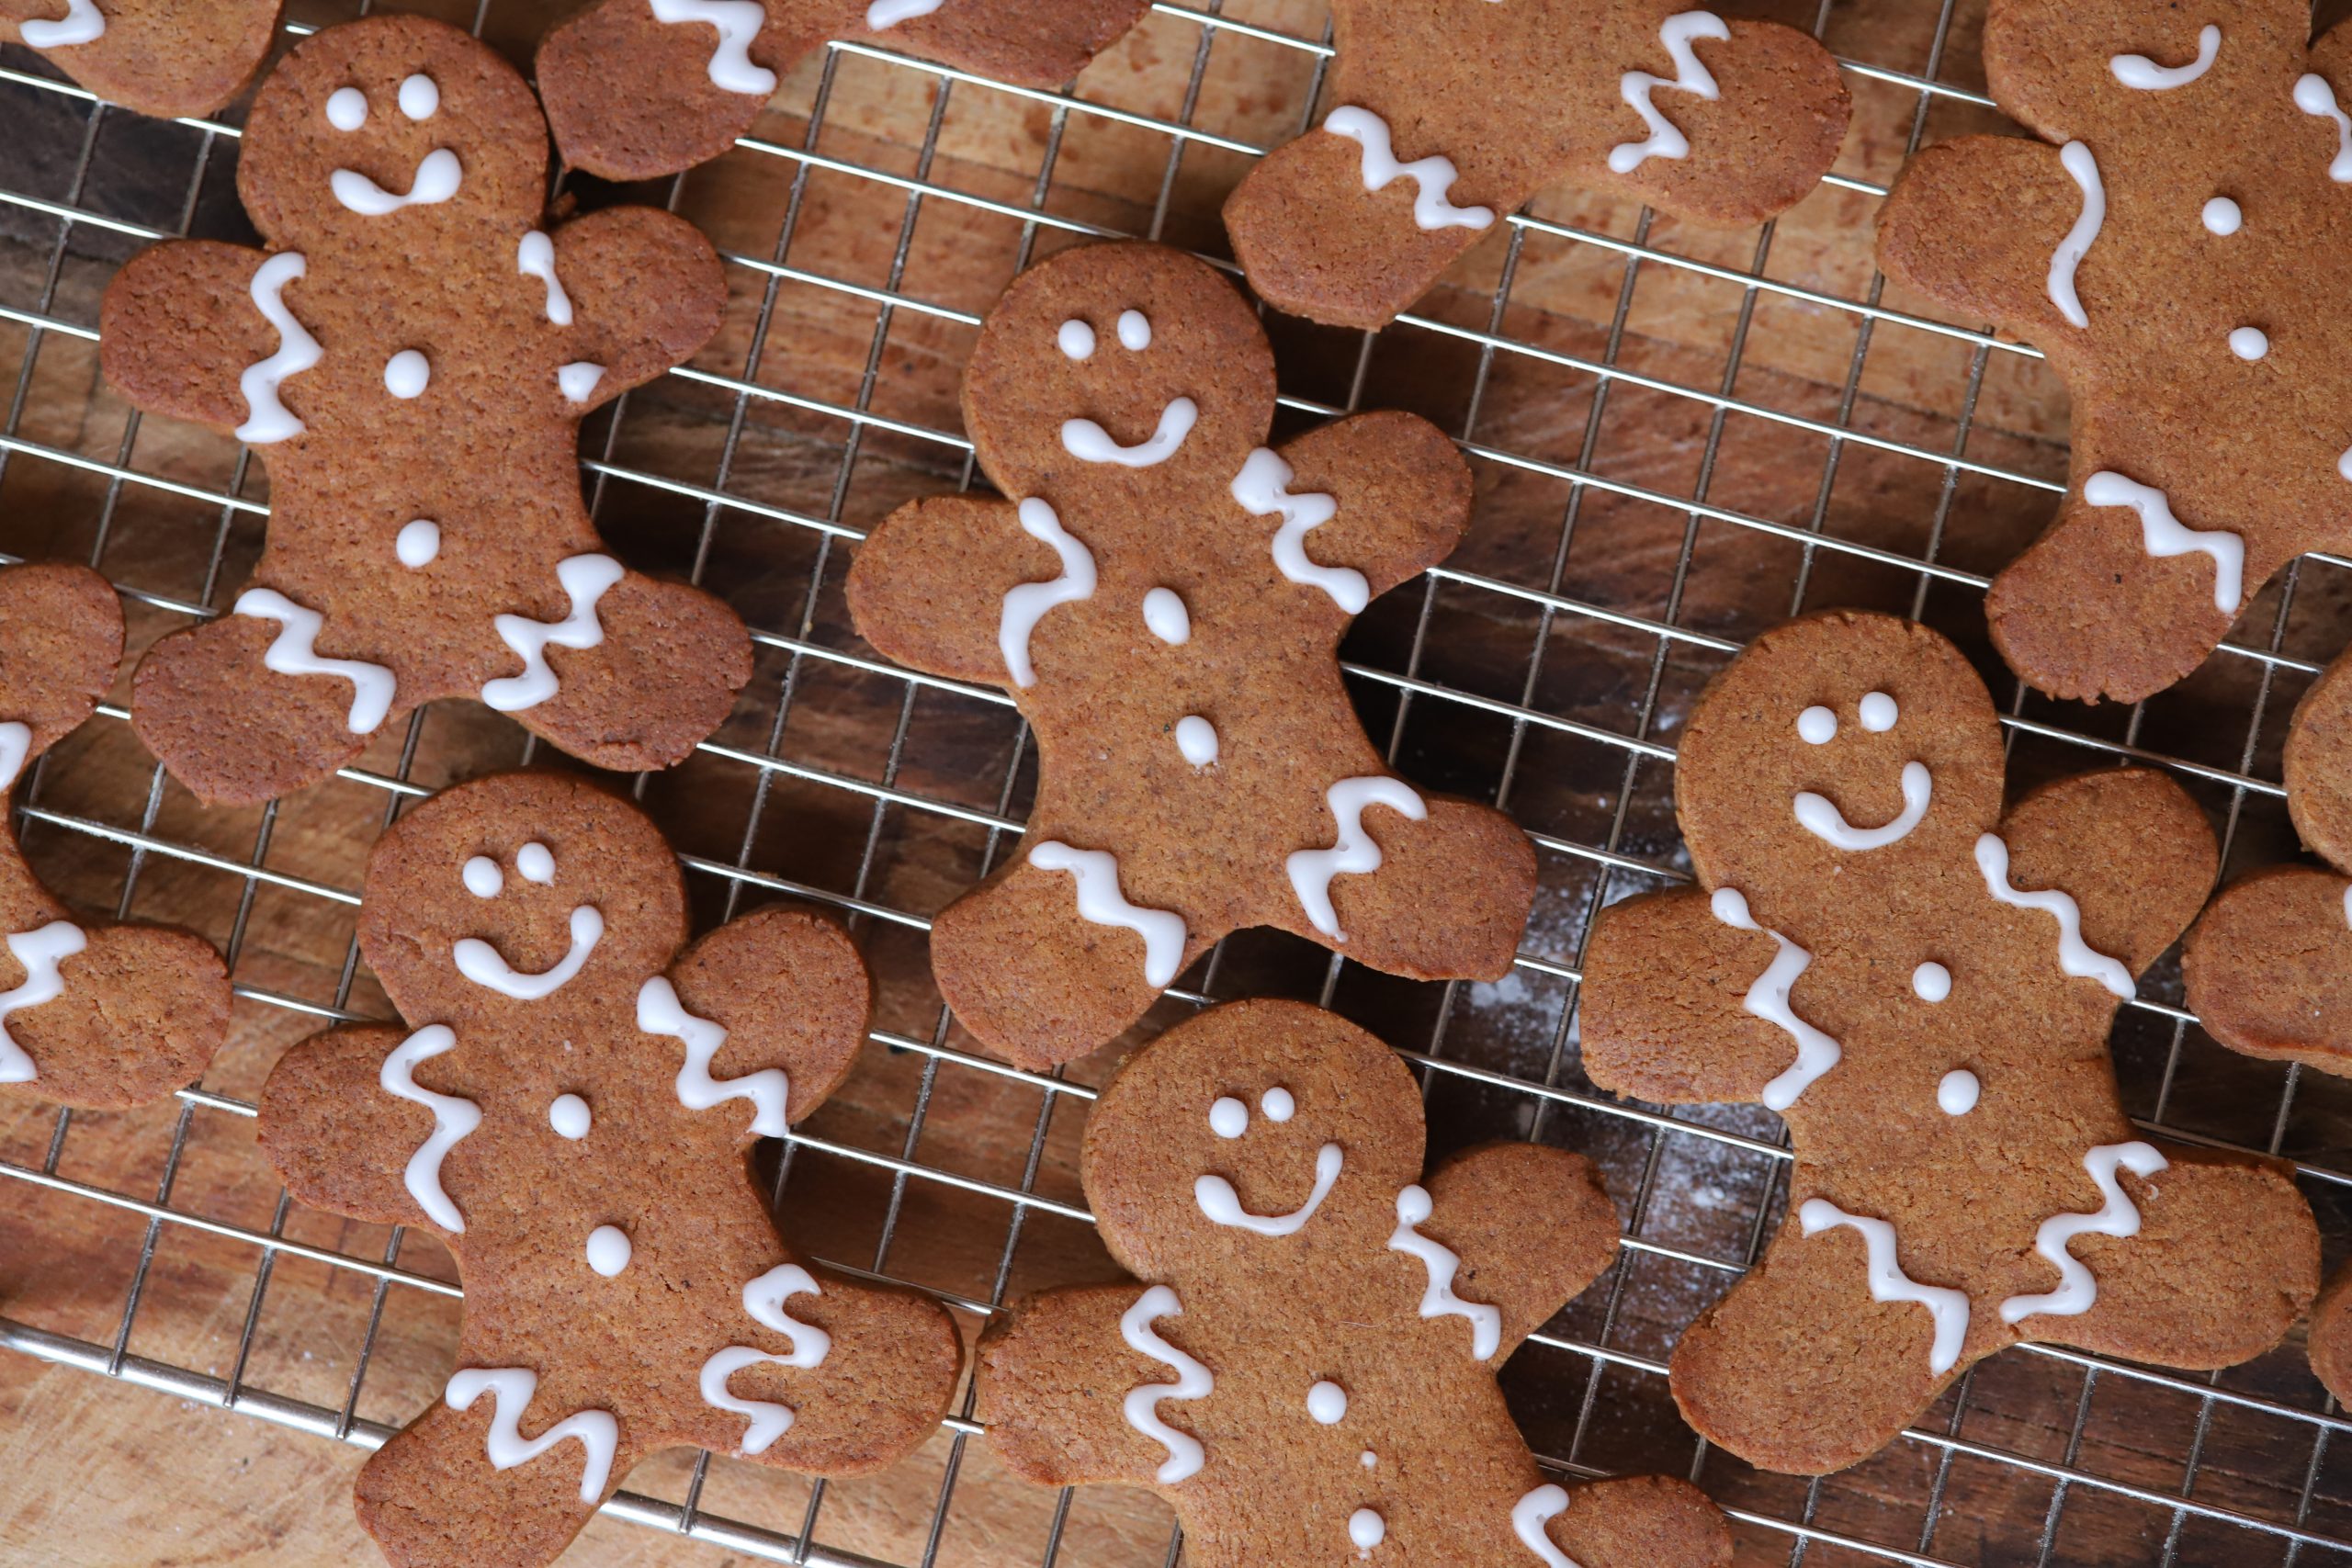 Recept om vegan gingerbread koekjes te bakken